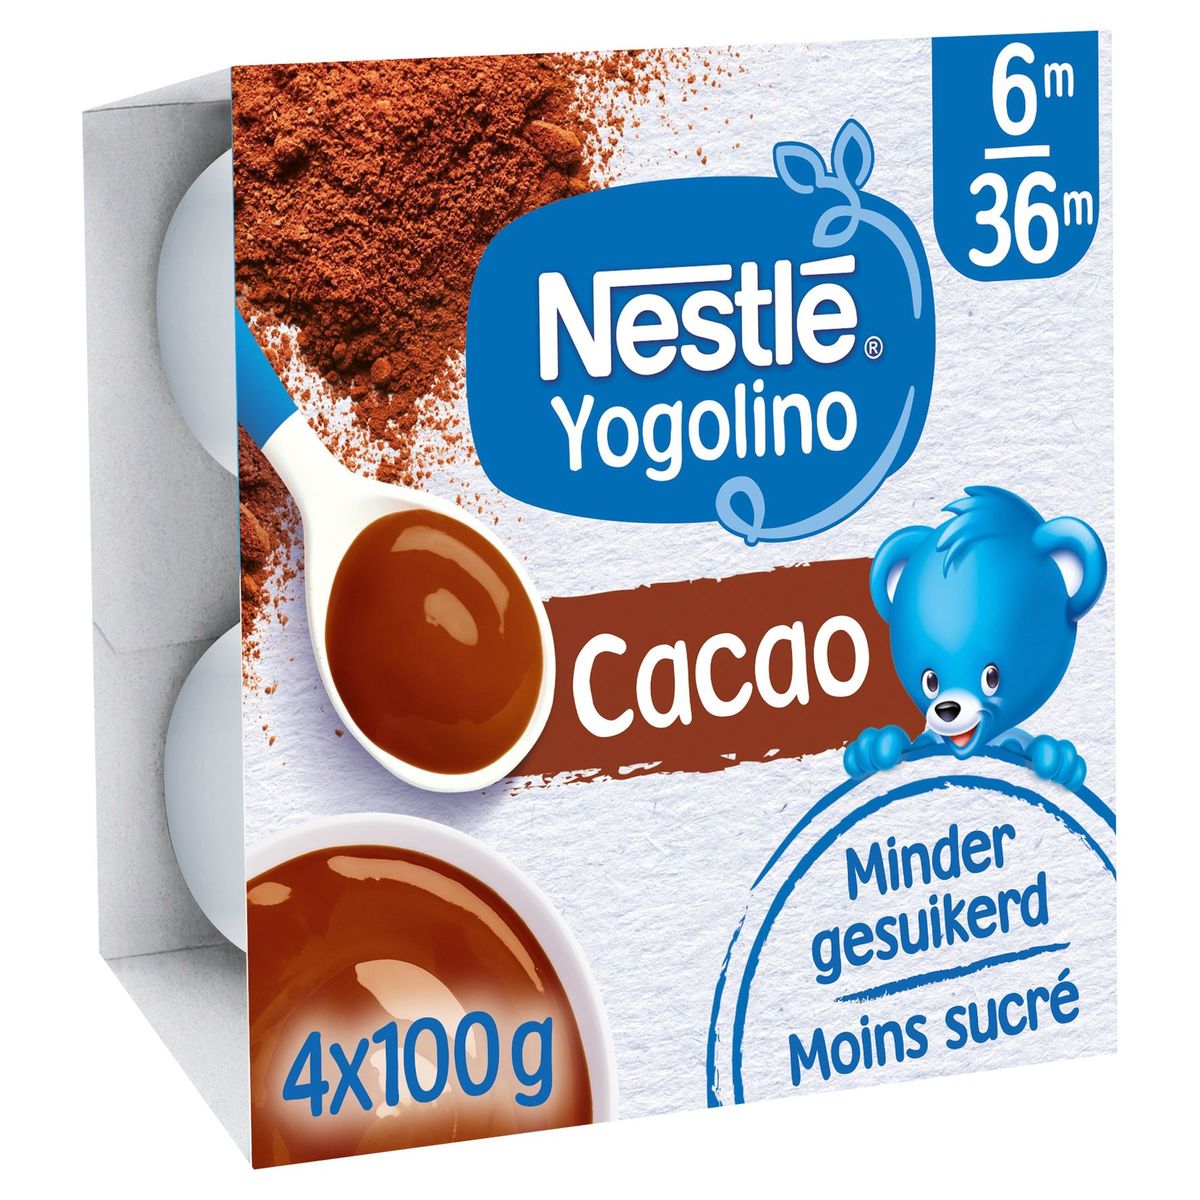 Nestlé Yogolino Cacao 6M 36M 4 x 100 g